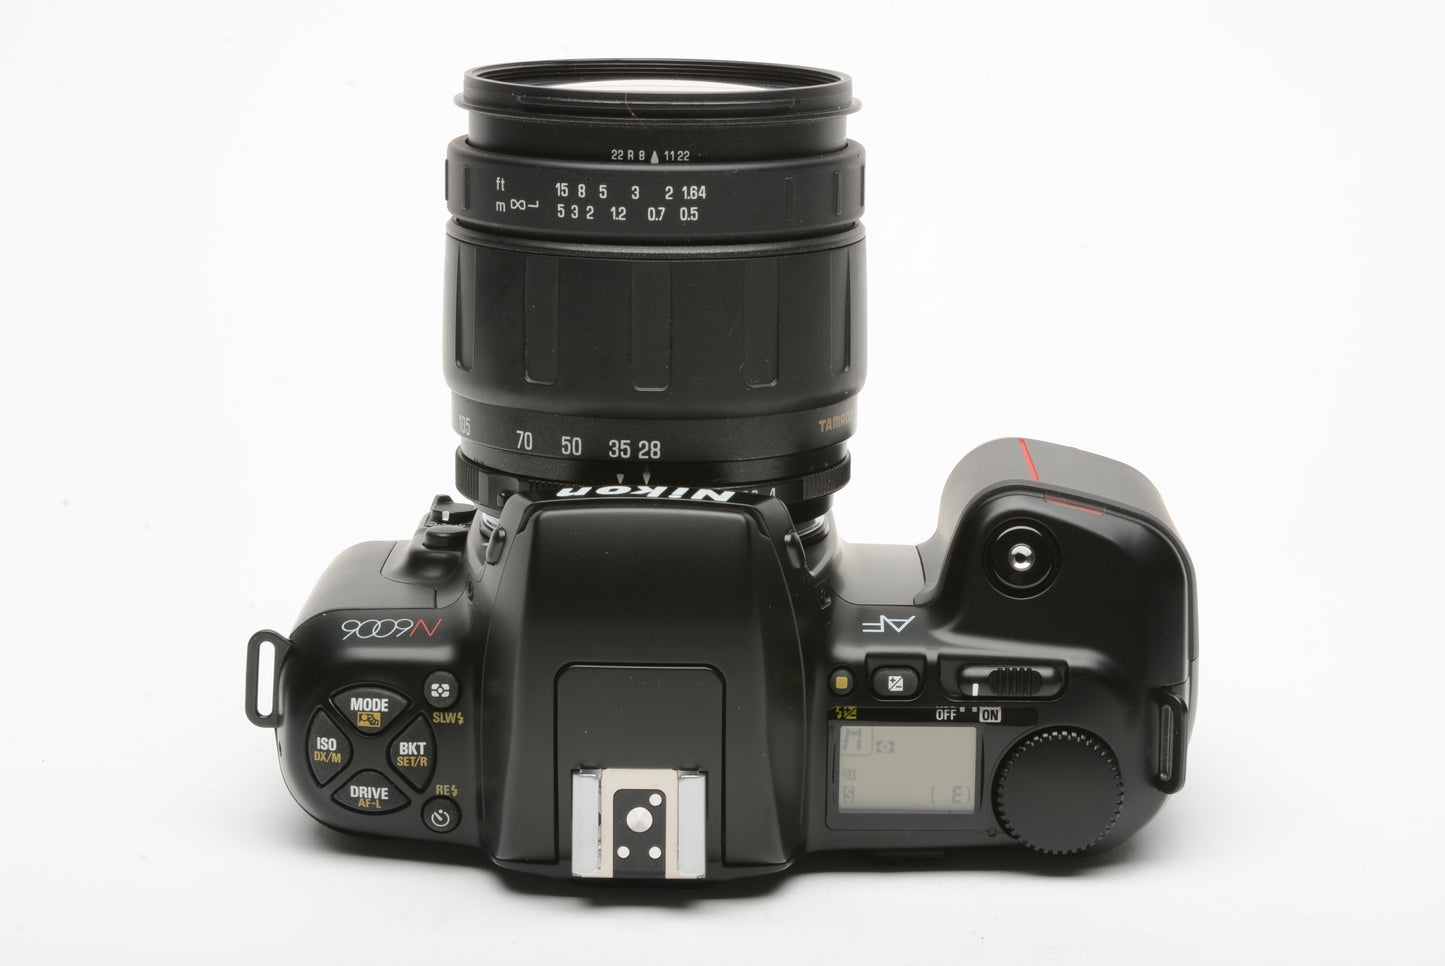 Nikon N6006 35mm SLR w/Tamron AF 18-105mm zoom lens, tested, great!